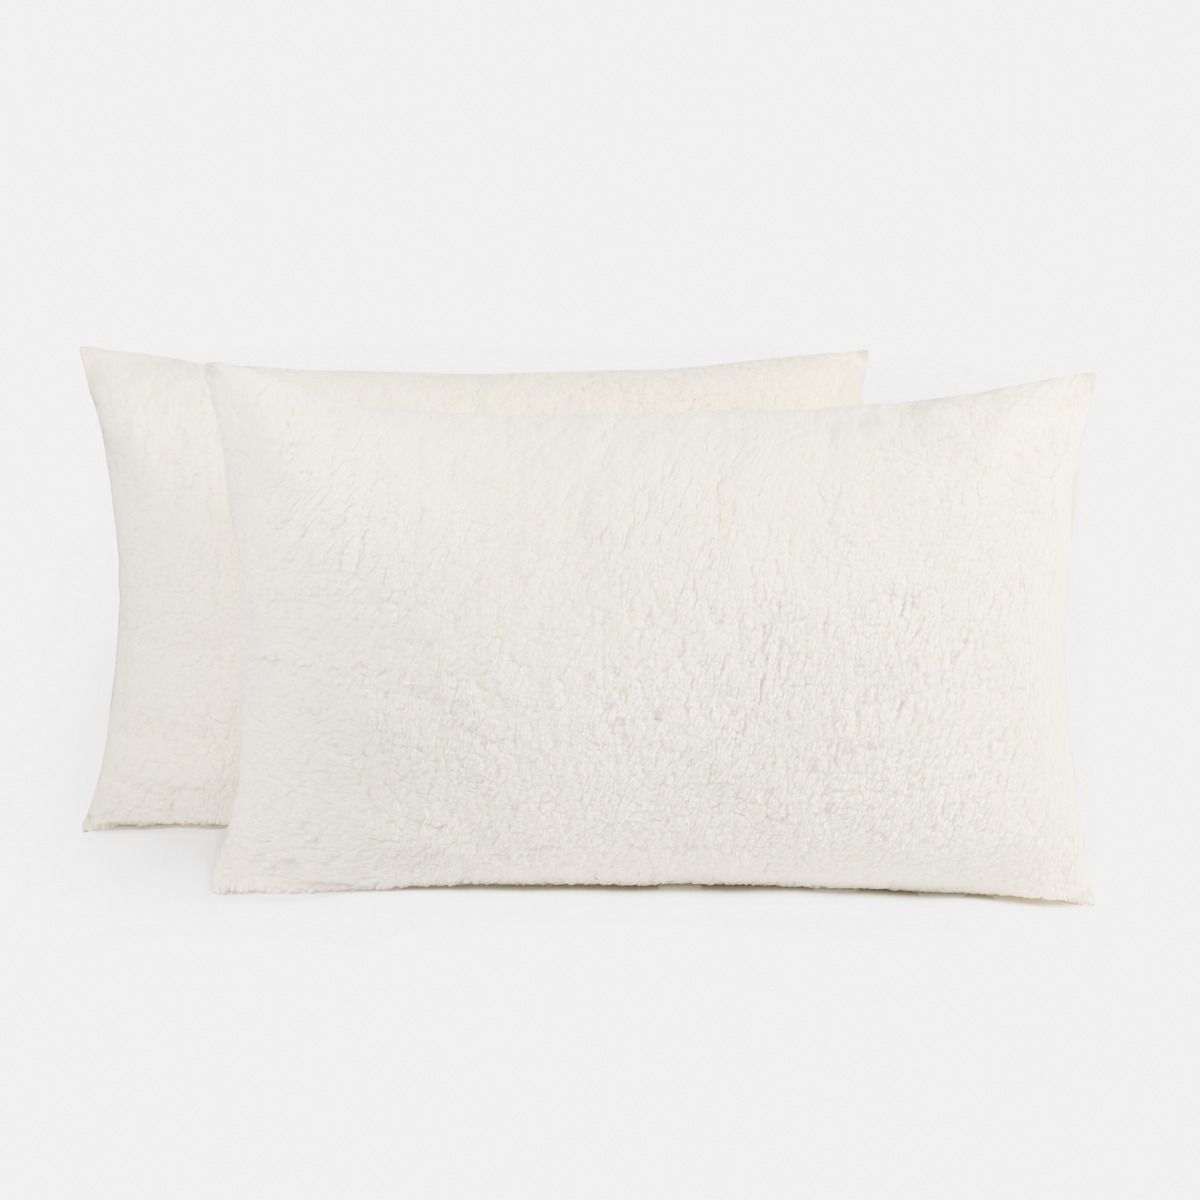 OHS Teddy Fleece Pillow - Cream